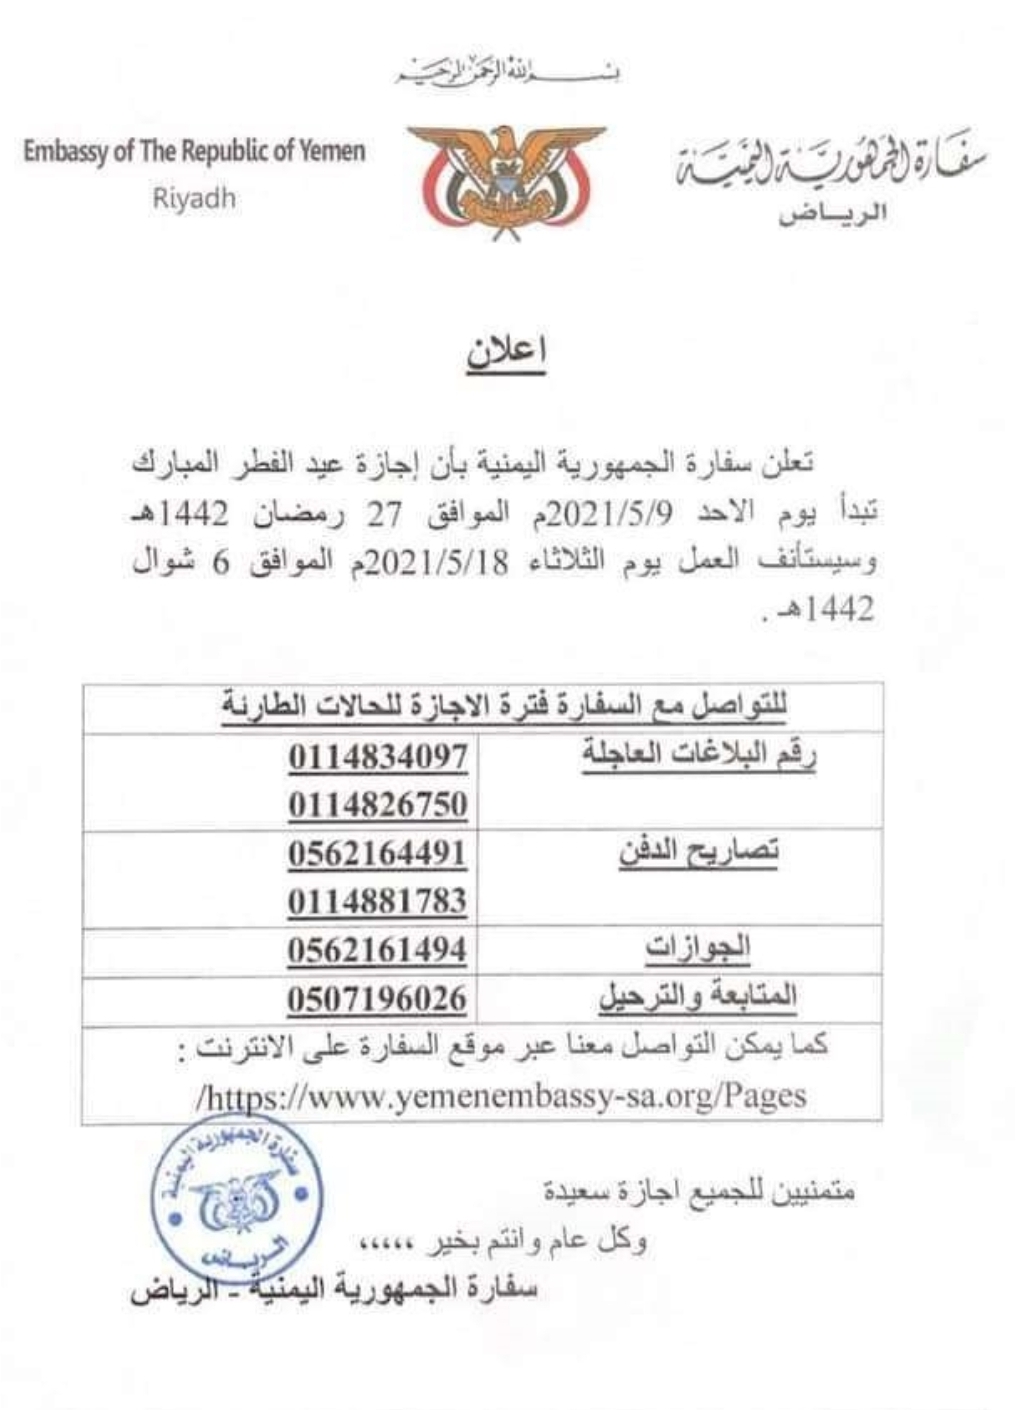 السفارة اليمنية بالرياض تعلن موعد إجازة عيد الفطر وتحدد ارقام لحاللت الطوارئ"صورة"